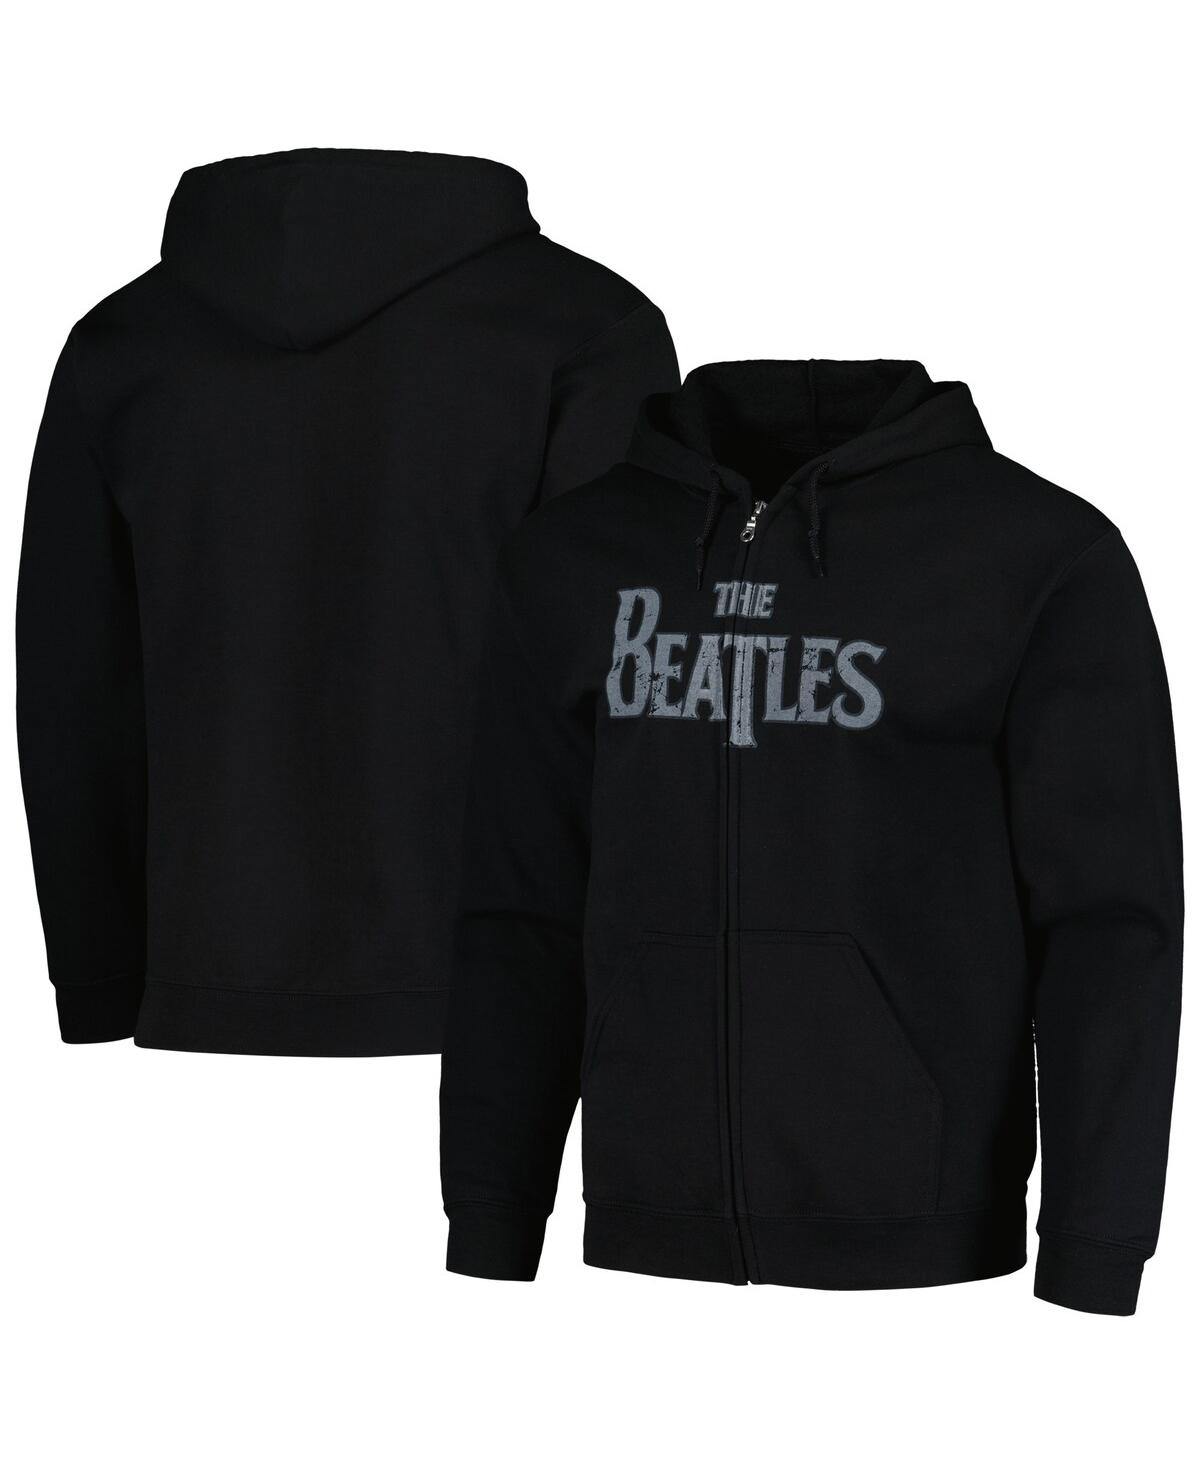 Shop Bravado Men's And Women's Black Distressed The Beatles Vintage-like Logo Hoodie Full-zip Sweatshirt